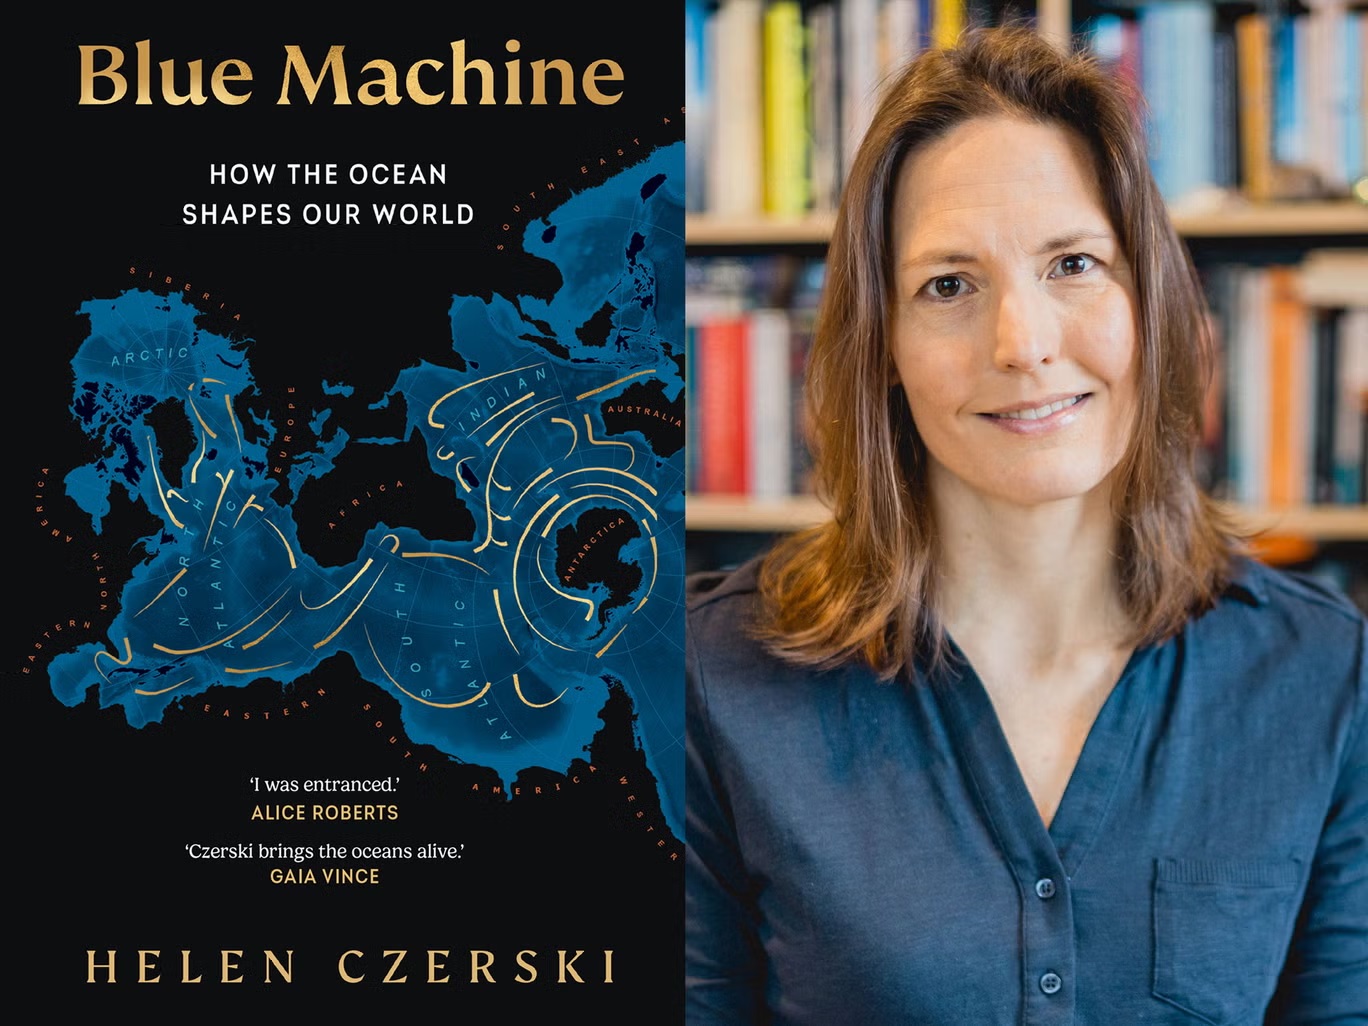  يتأمل كتاب "آلة زرقاء: كيف يشكل المحيط عالمنا" لهيلين تشيرسكي الضرر الذي تلحقه الملوثات وتغير المناخ بالمحيط (إيما غيبسون)